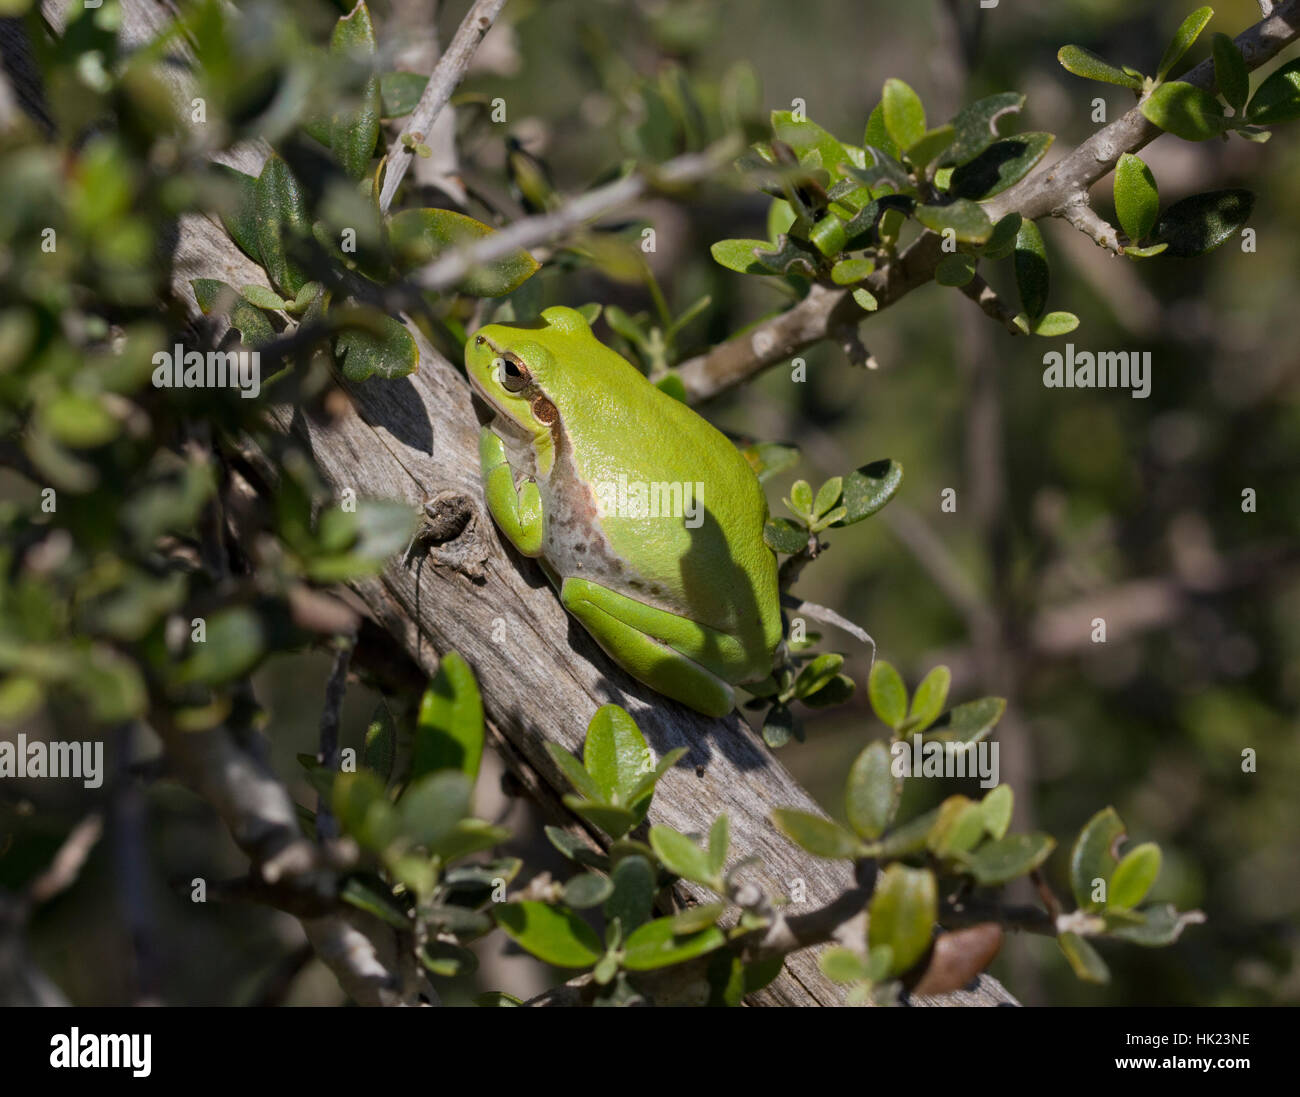 Middle Eastern Tree Frog (Hyla savignii) amongst foliage. Stock Photo